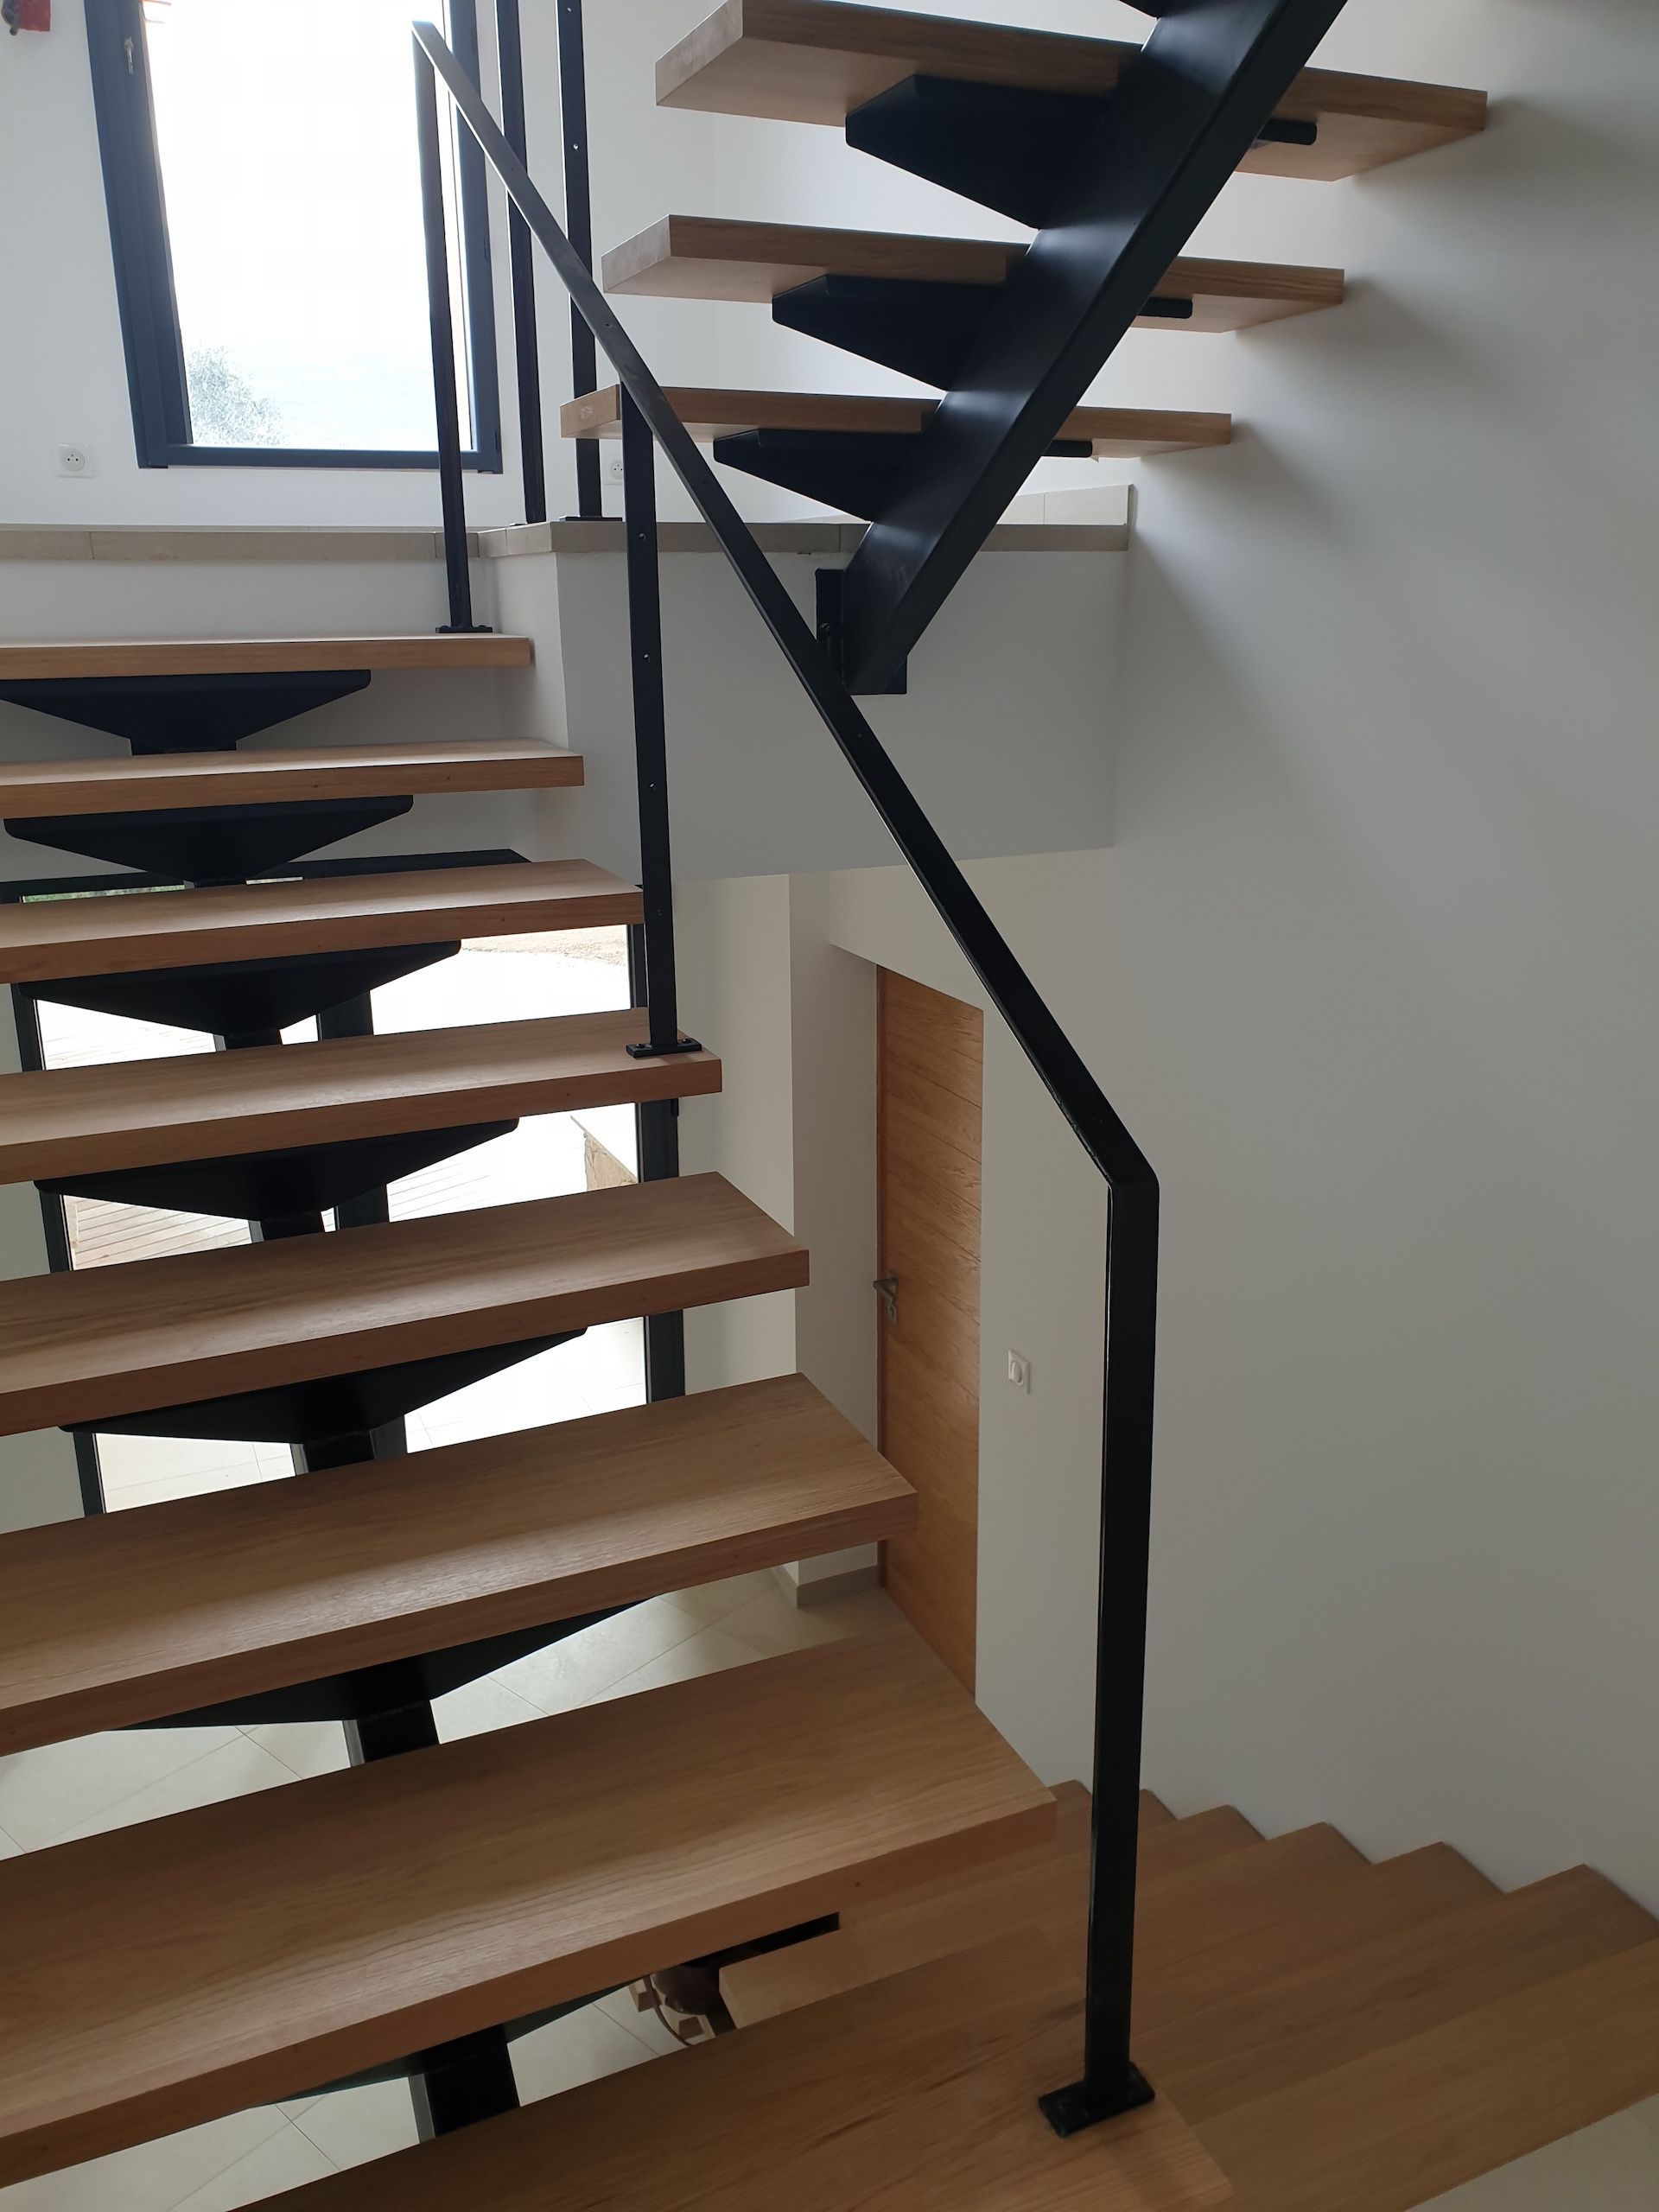 Escalier en bois design avec rampe noire en fer